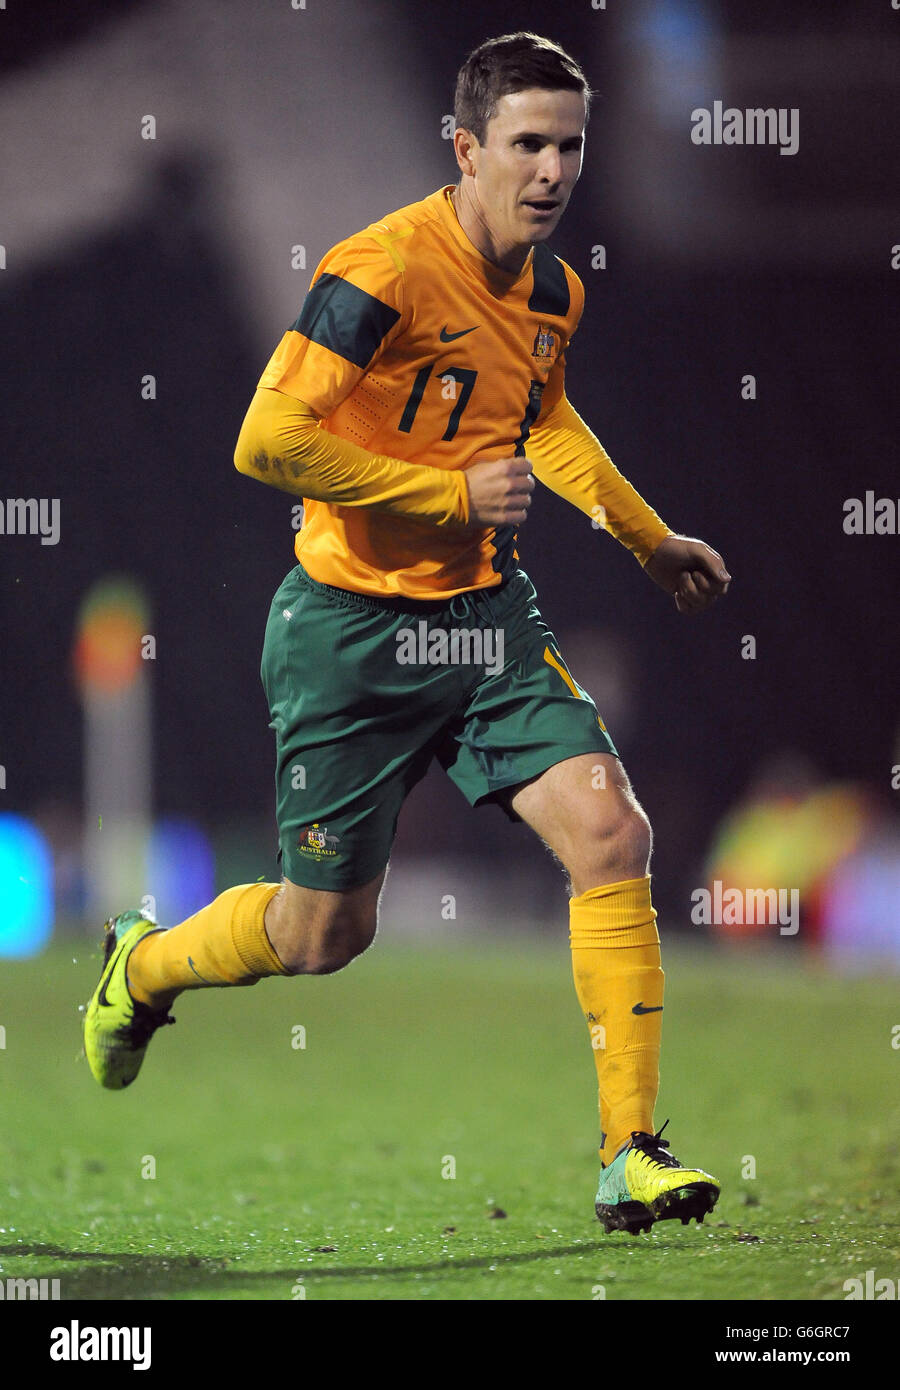 Soccer - FIFA International Friendly - Australia v Canada - Craven Cottage. Matt McKay, Australia Stock Photo